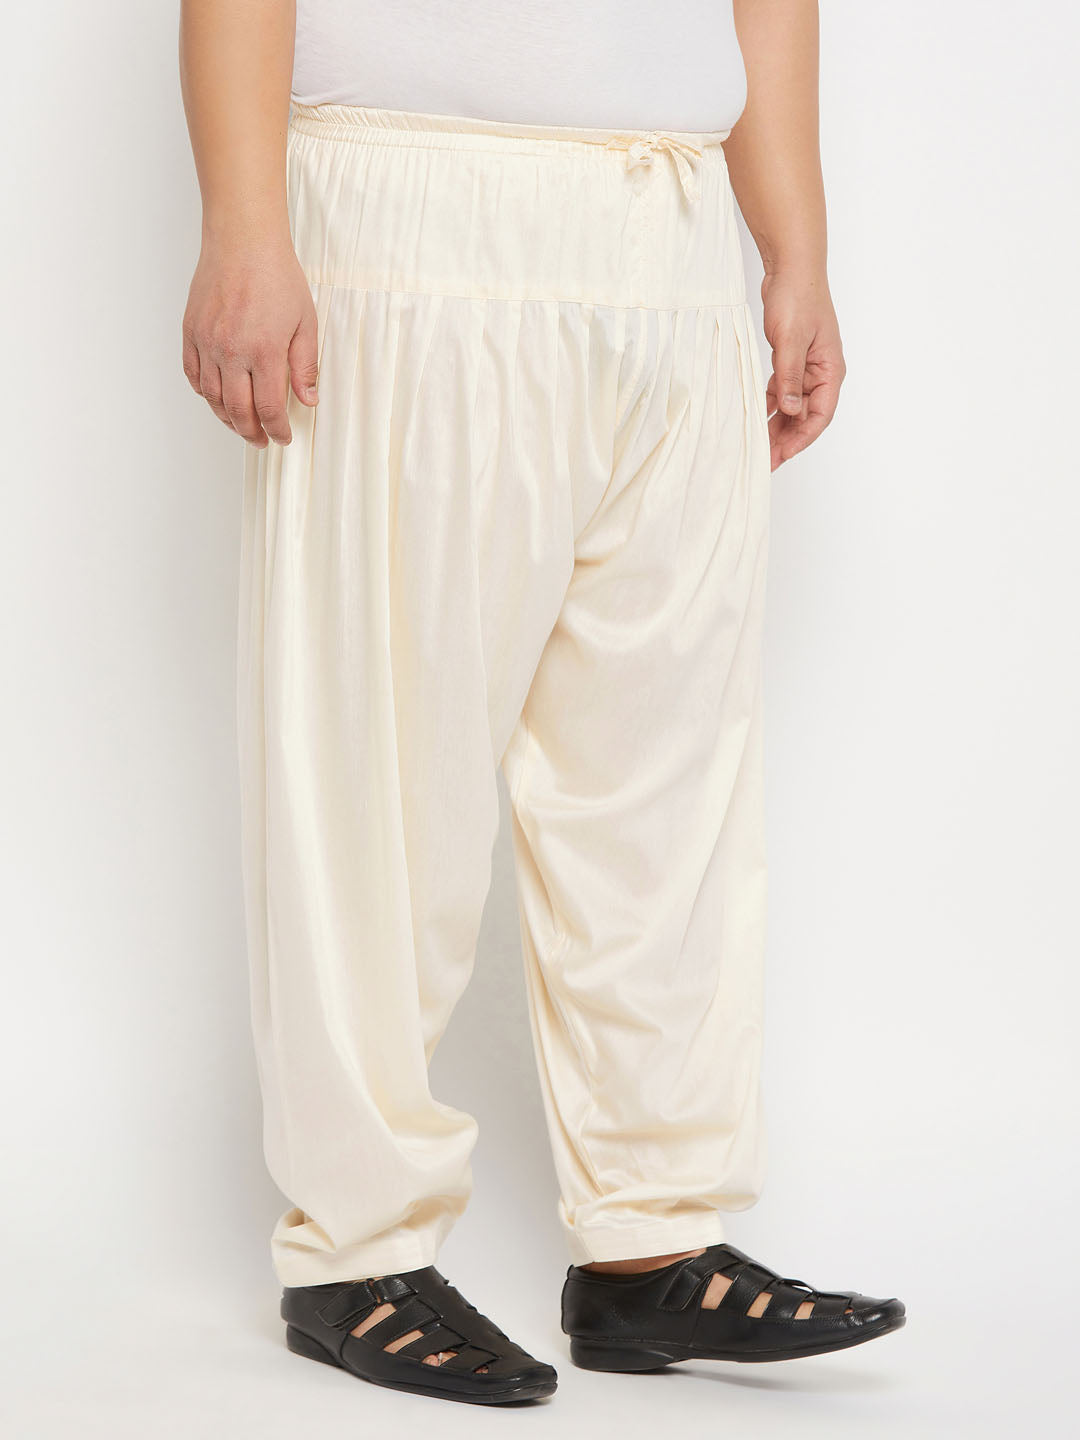 Women's Patiala Salwar Ready Made Punjabi Style Pant Indian Cotton Dhoti  Trouser | eBay